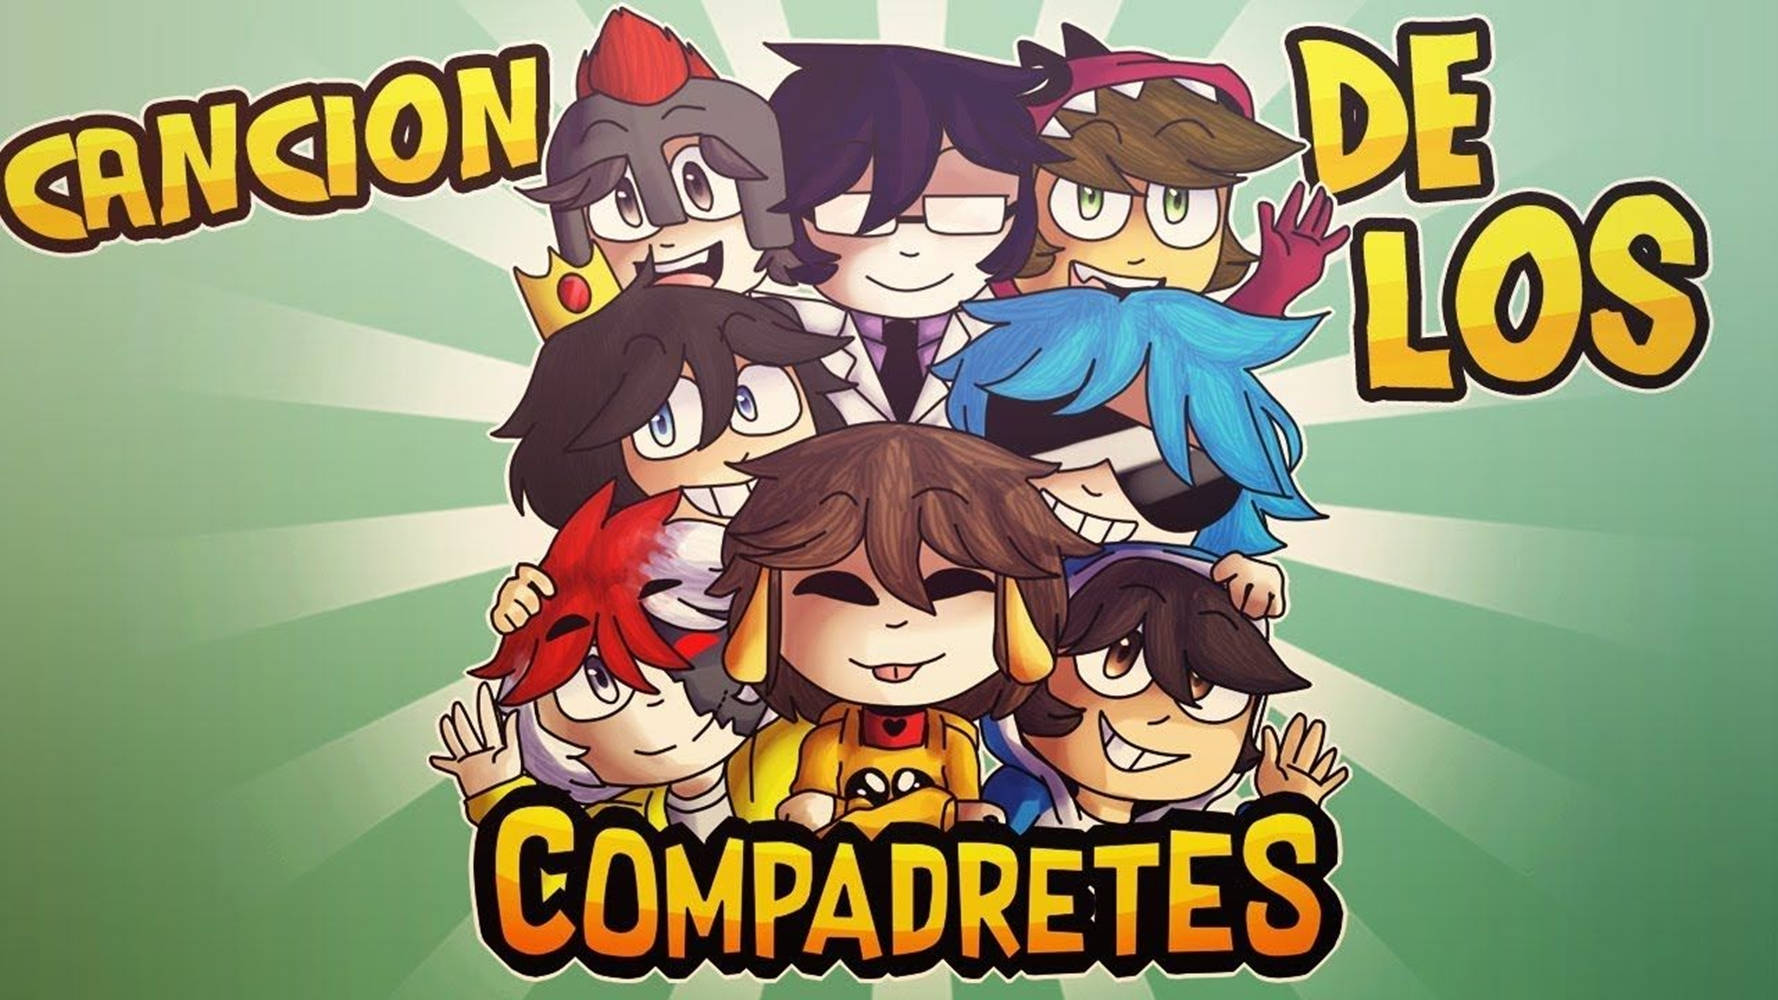 Compadretes Los Compas Video Game Wallpaper